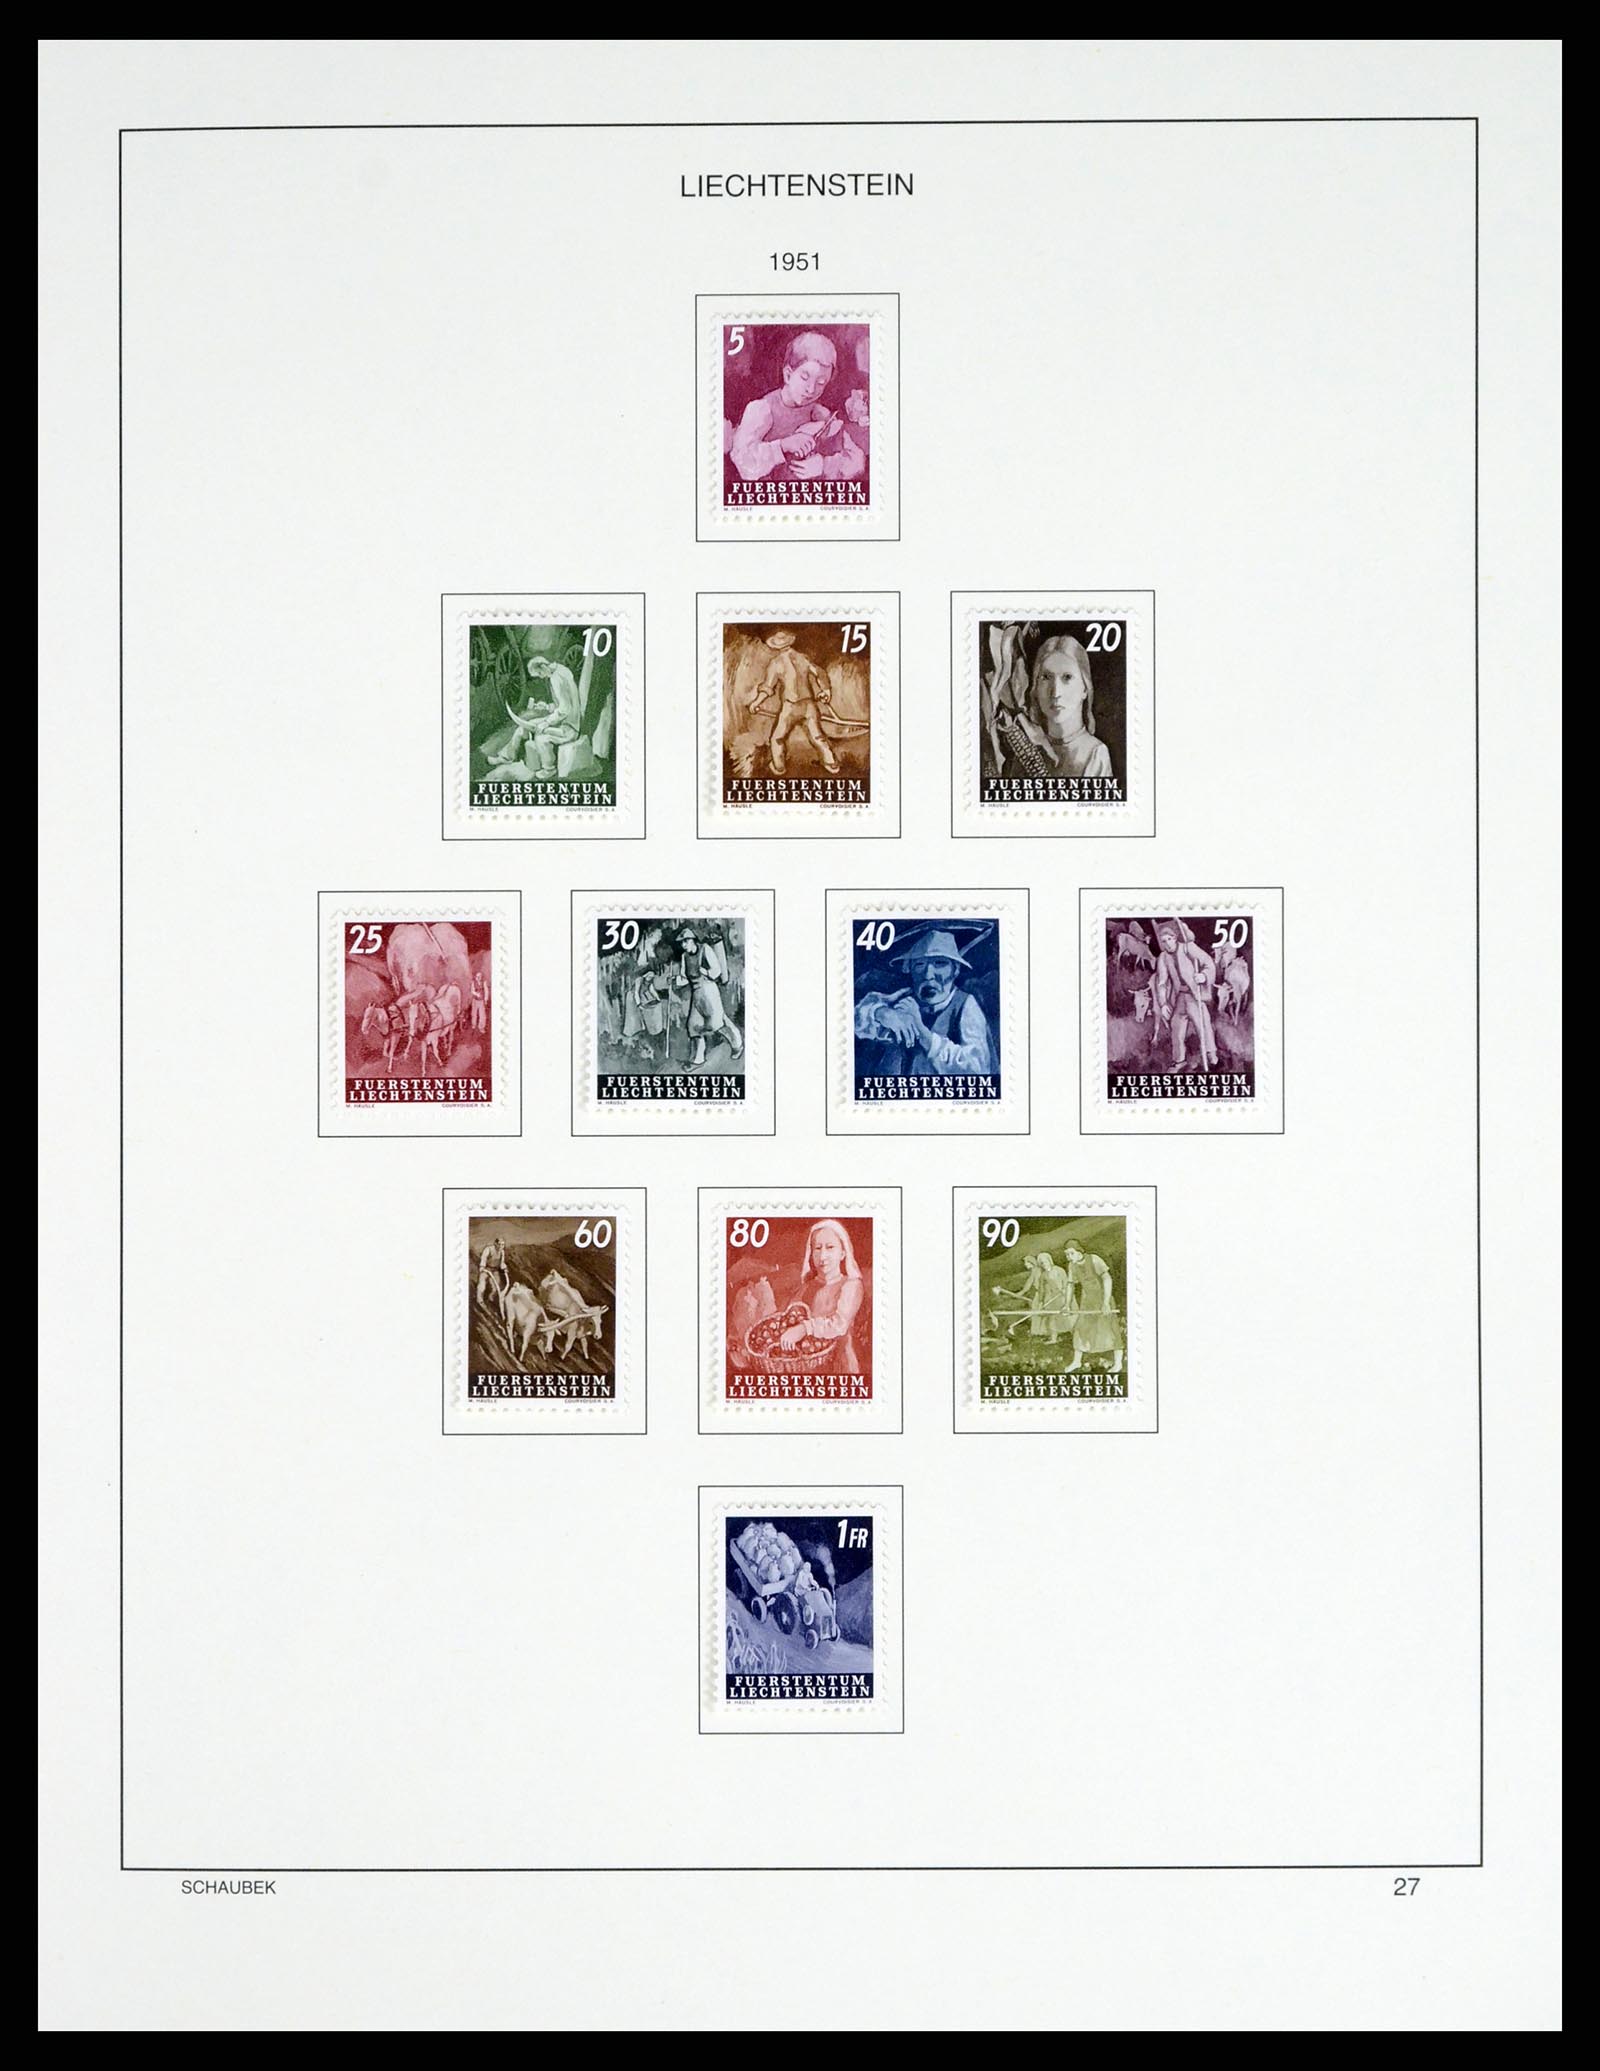 37547 032 - Stamp collection 37547 Liechtenstein 1912-2011.